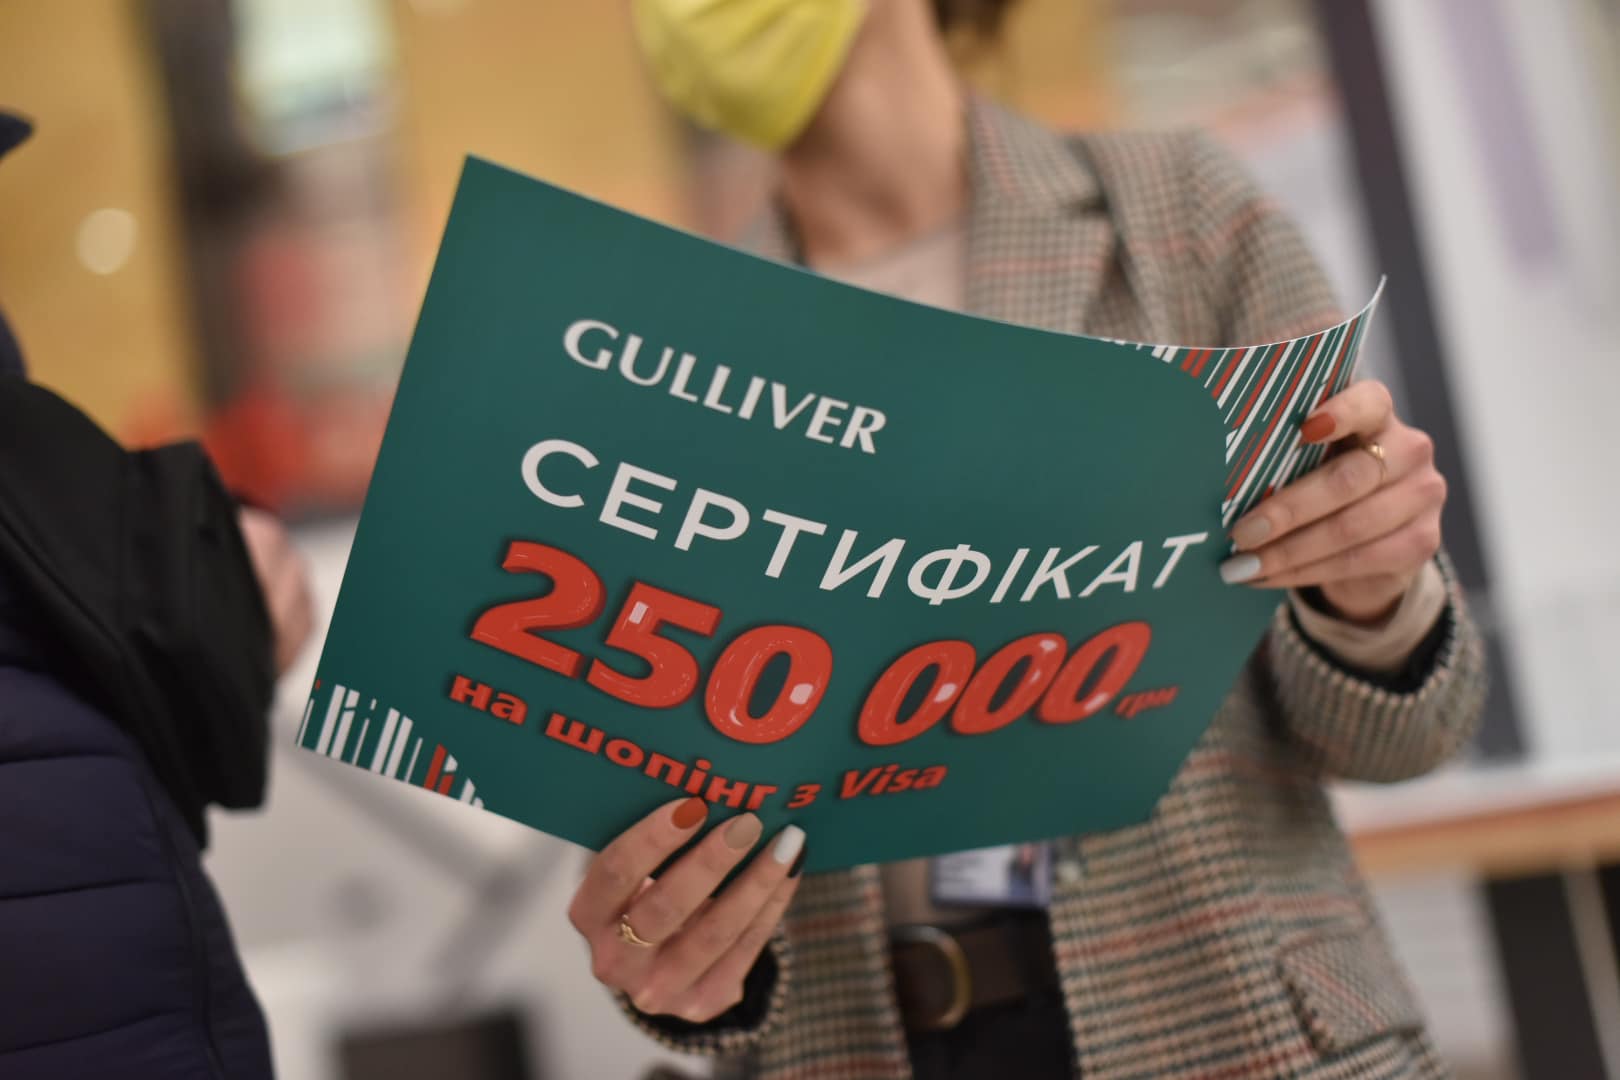 ТРЦ Gulliver разыграл сертификат на шопинг на сумму 250 тысяч гривен